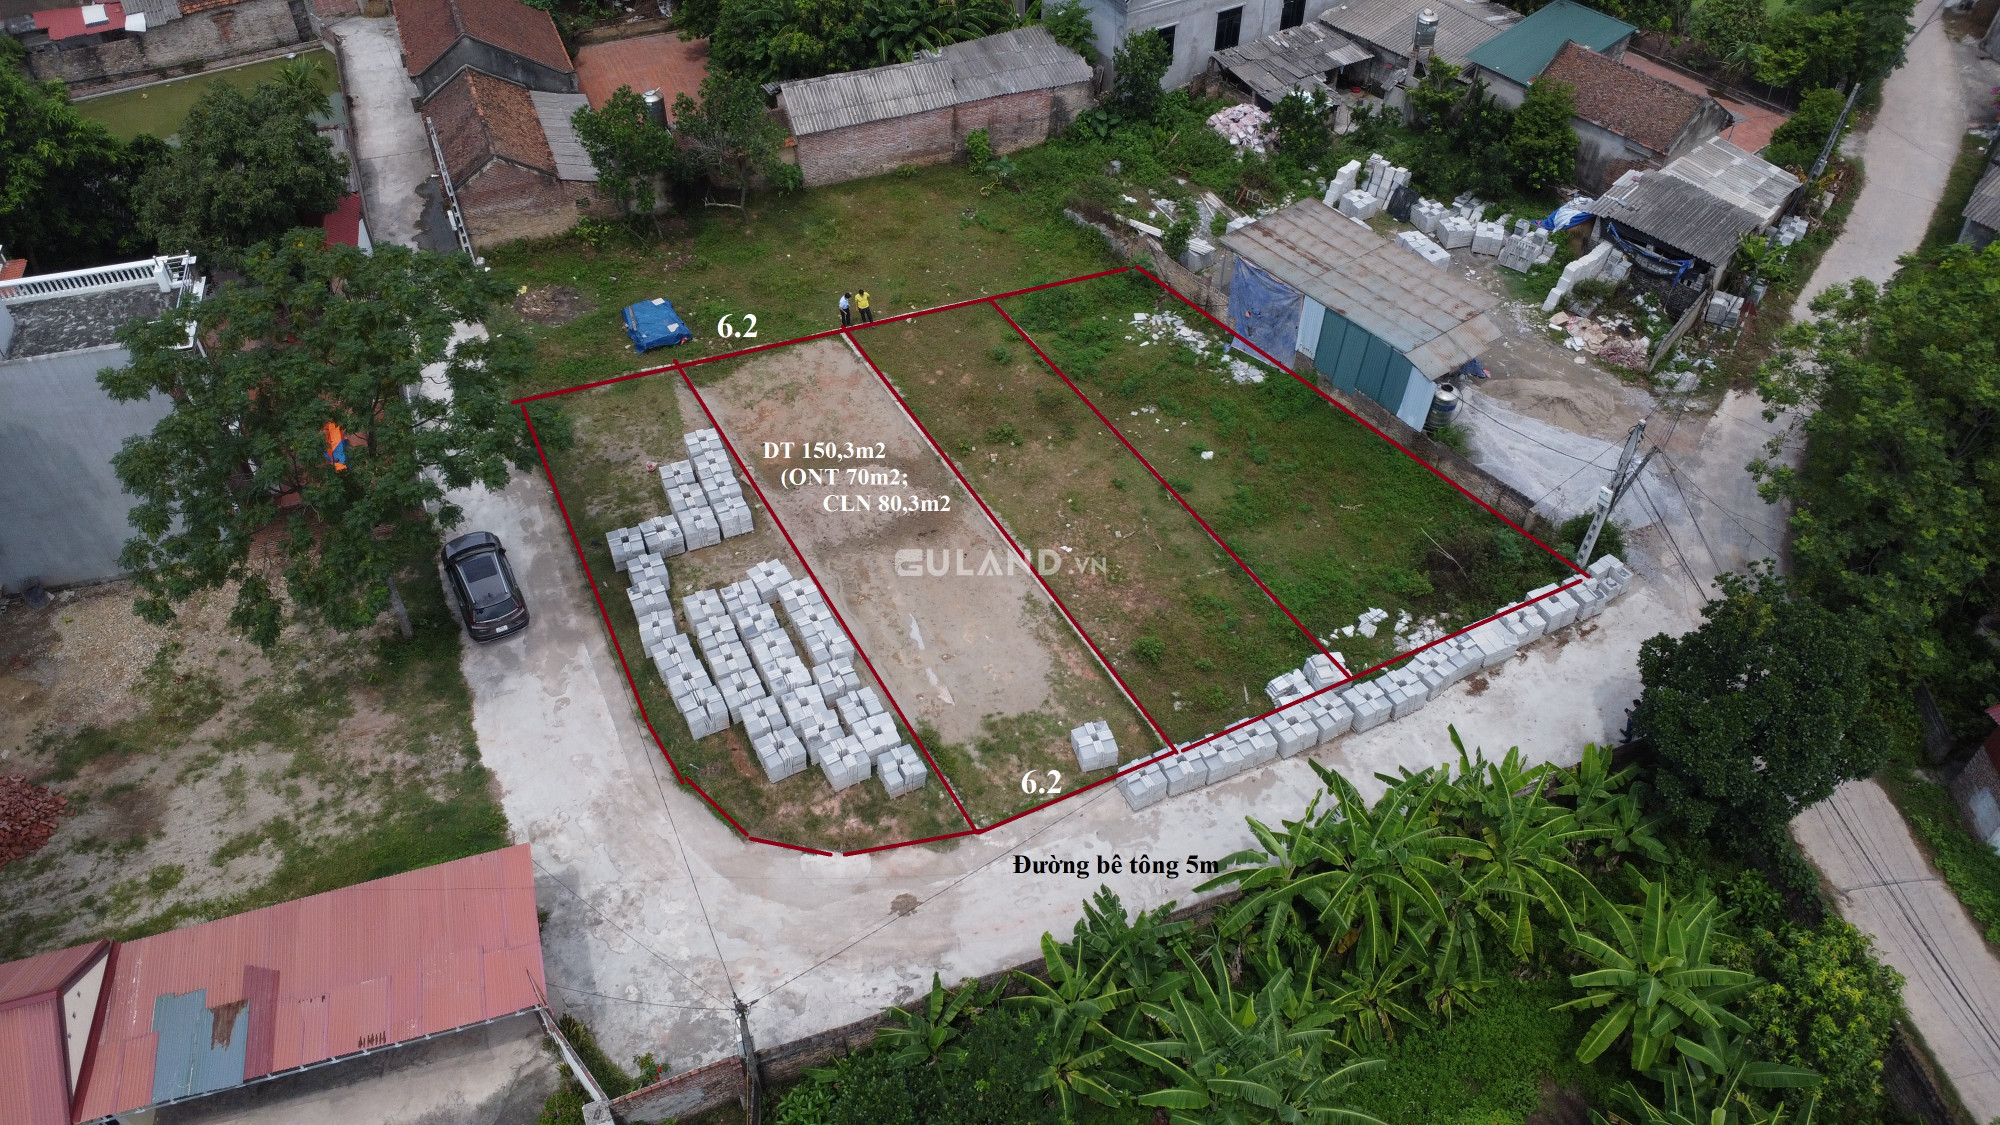 Cần bán lô đất DT150m2, Mặt tiền 6m, lô góc 2 mặt thoáng, gần UBND xã Hoàng Lương